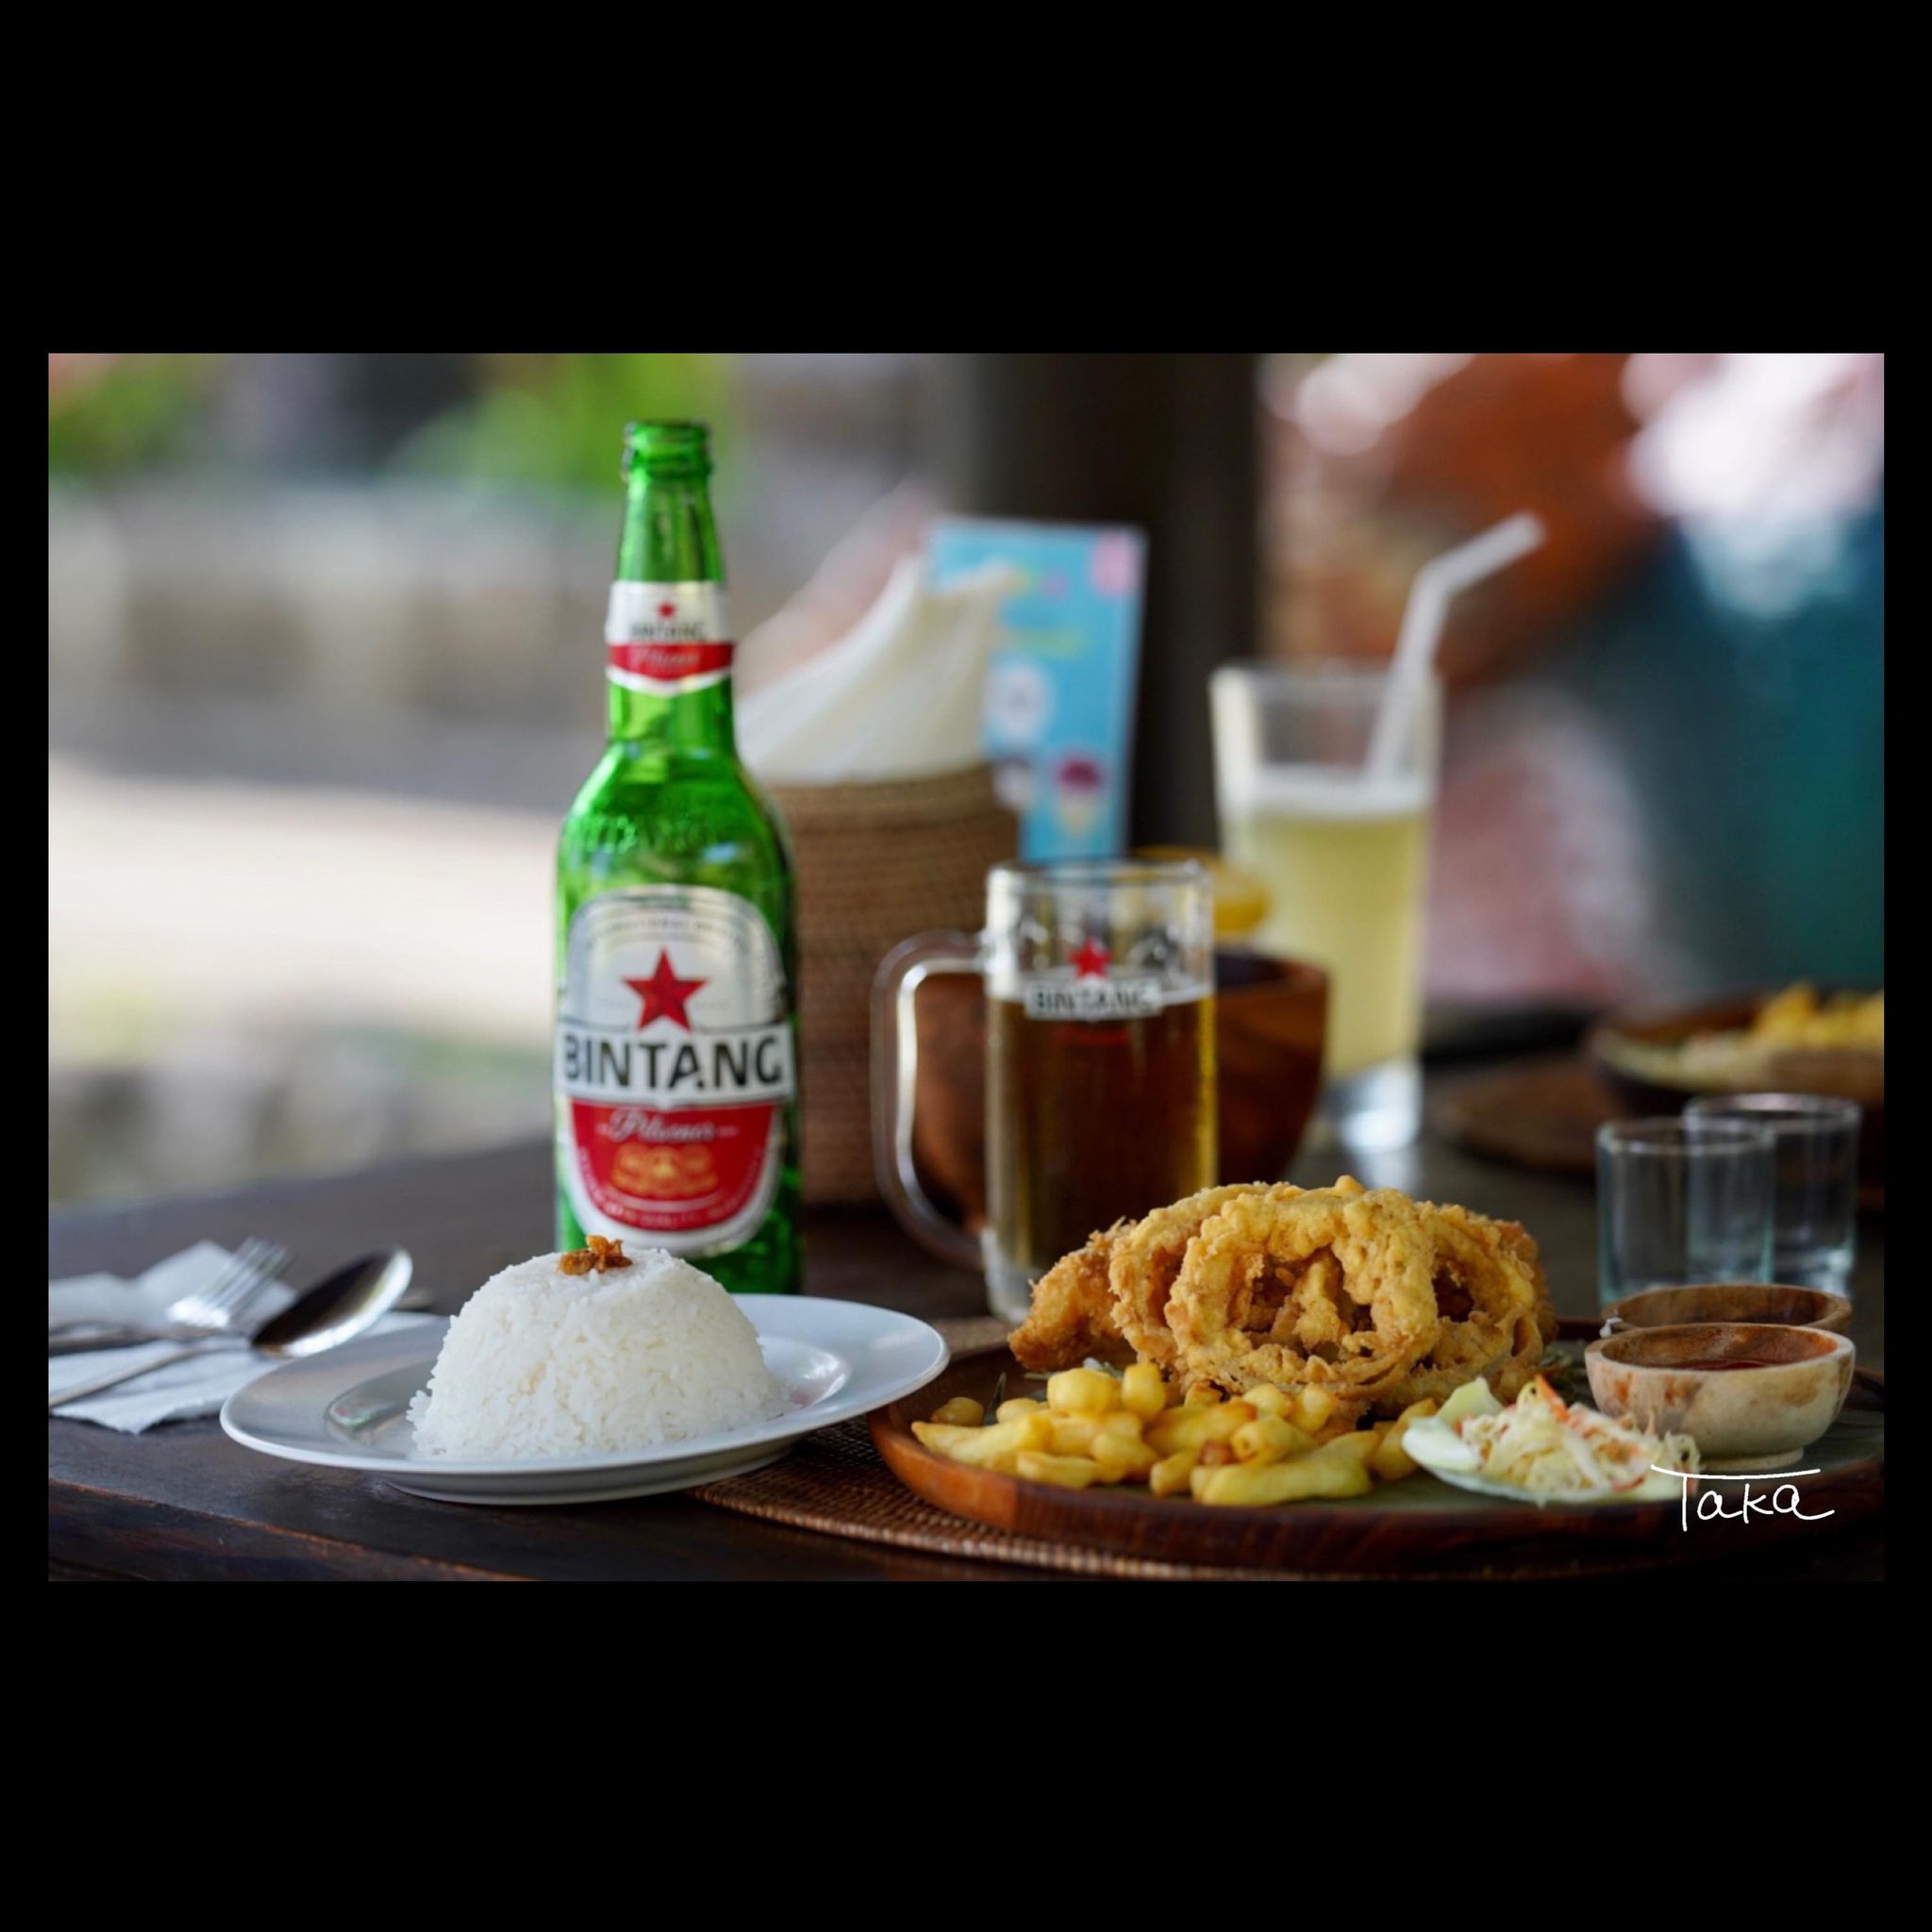 バリ島のレストランとビンタンビール